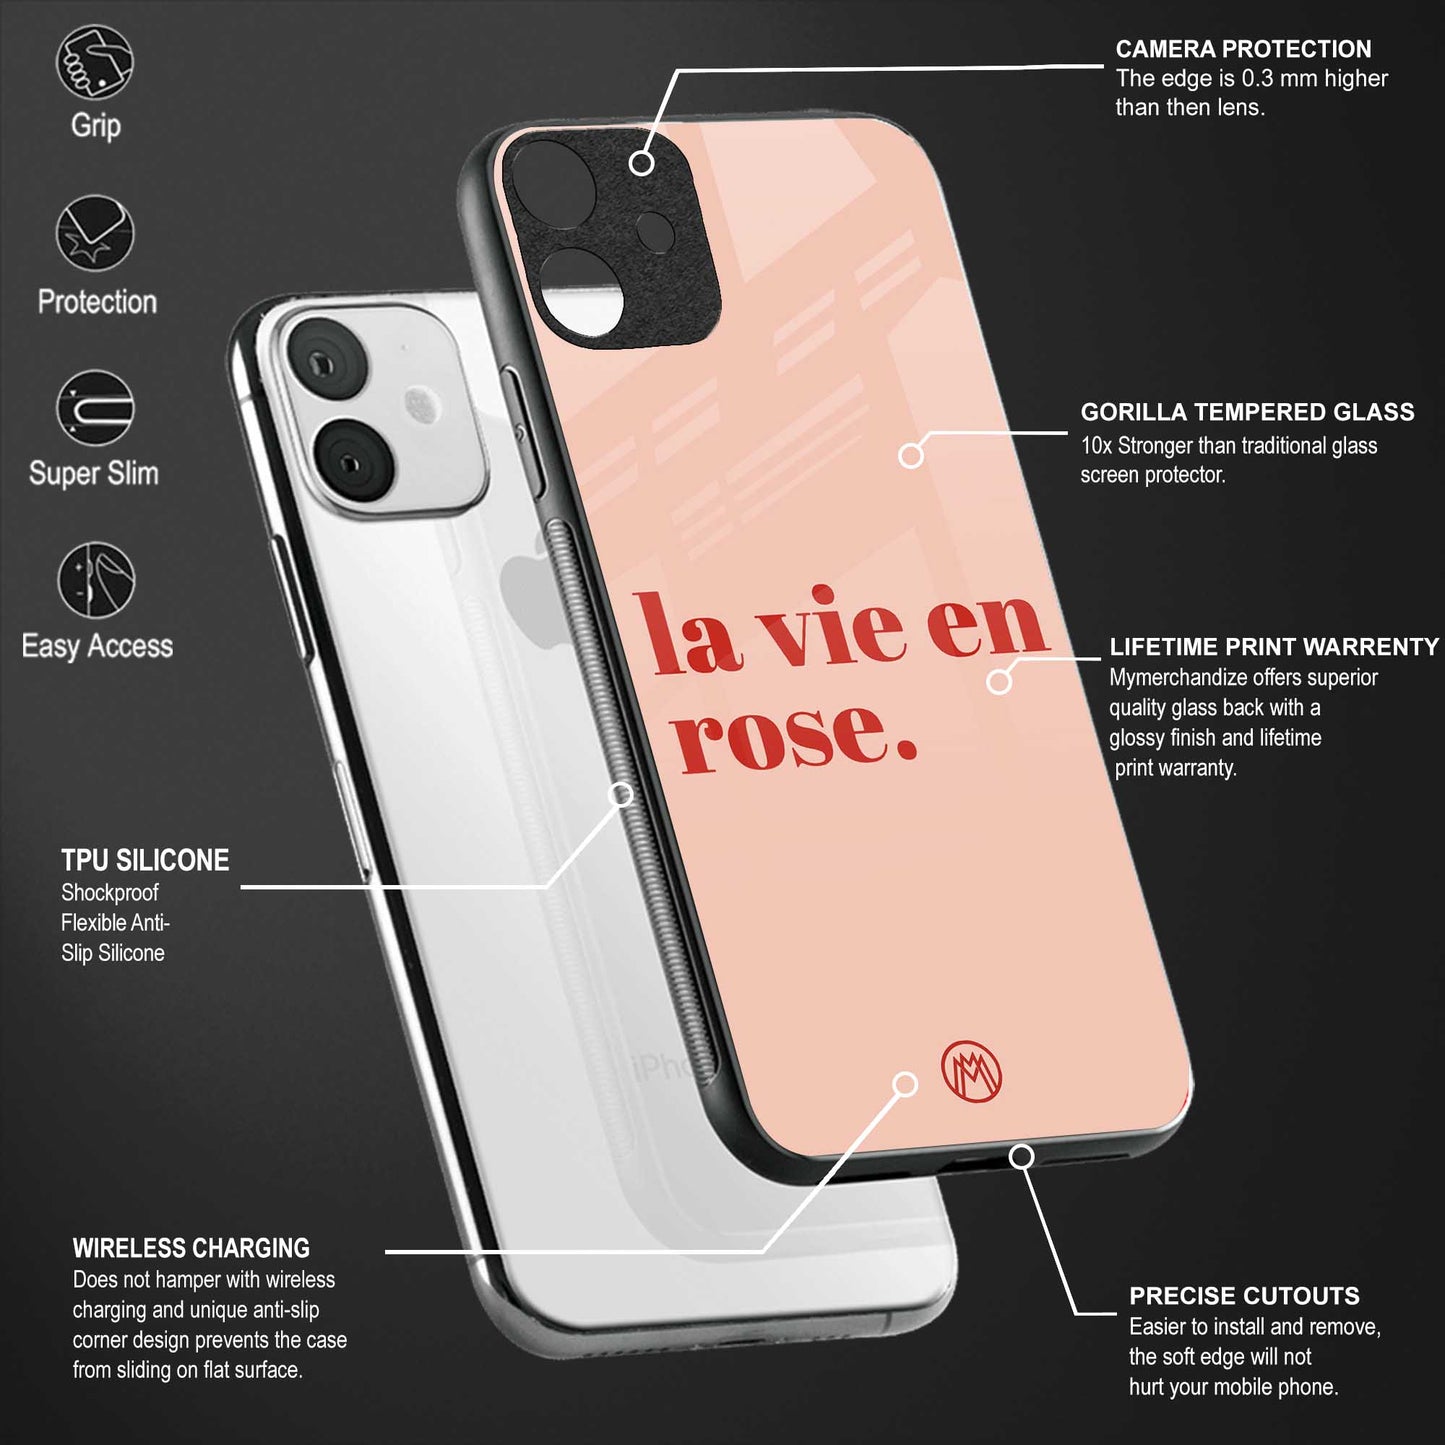 la vie en rose quote glass case for iphone 6s image-4